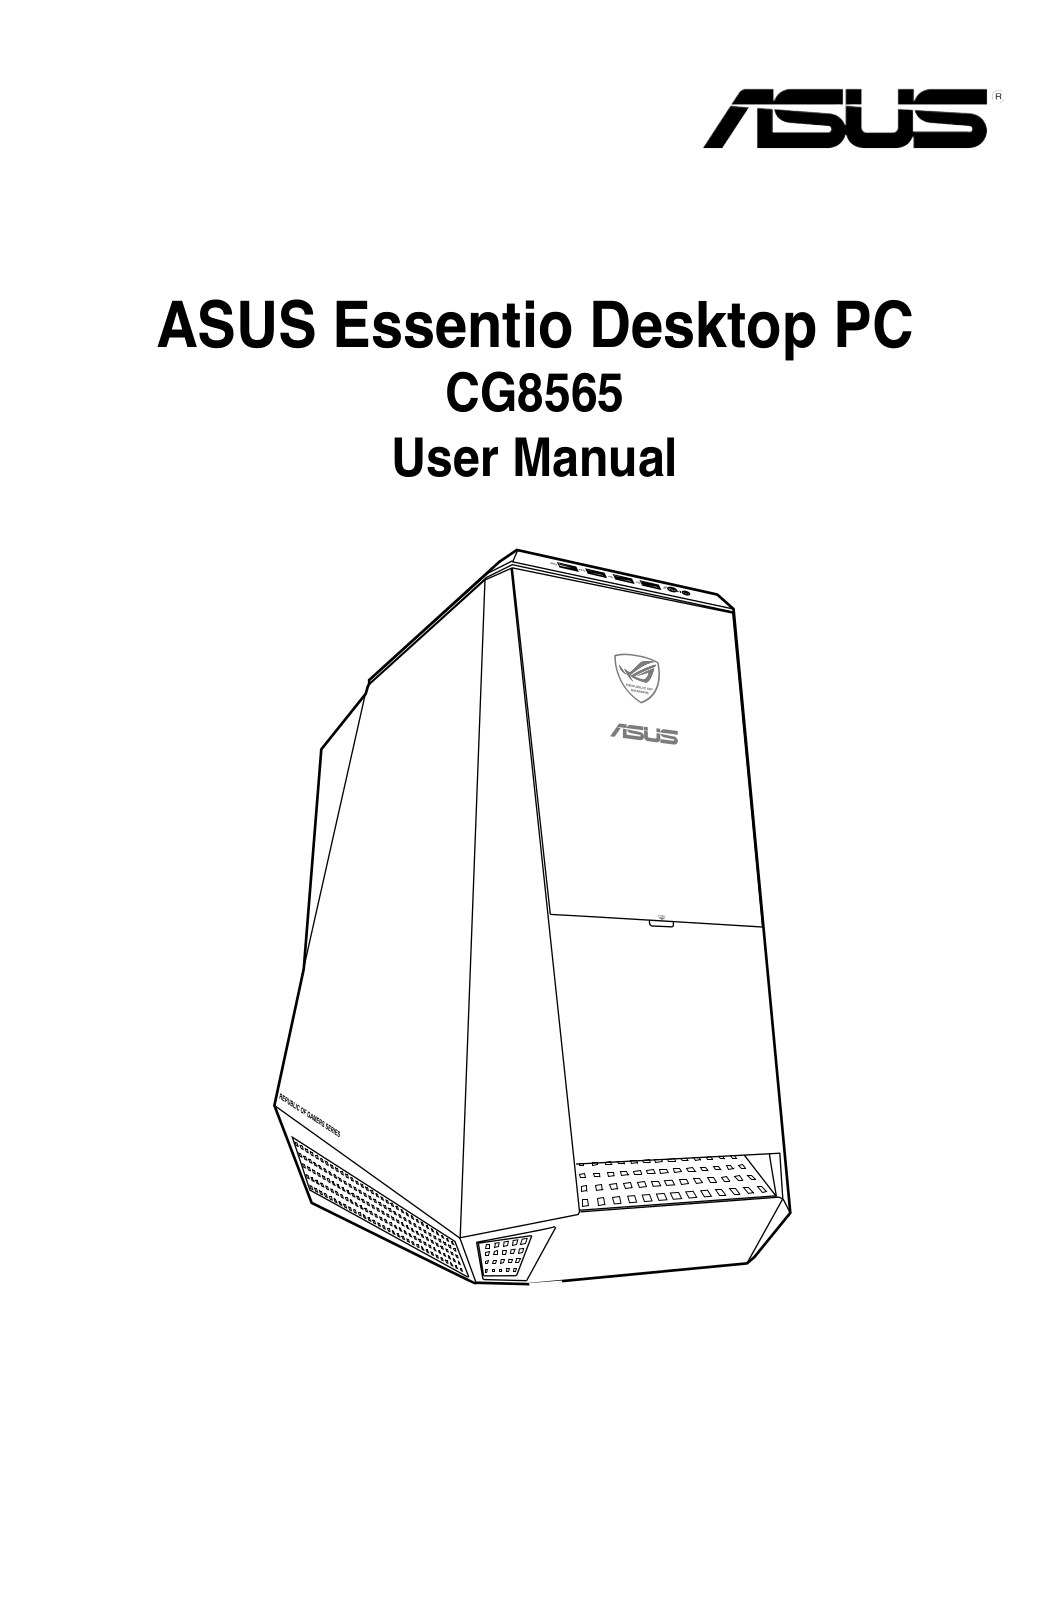 ASUS ROG CG8565 User Manual